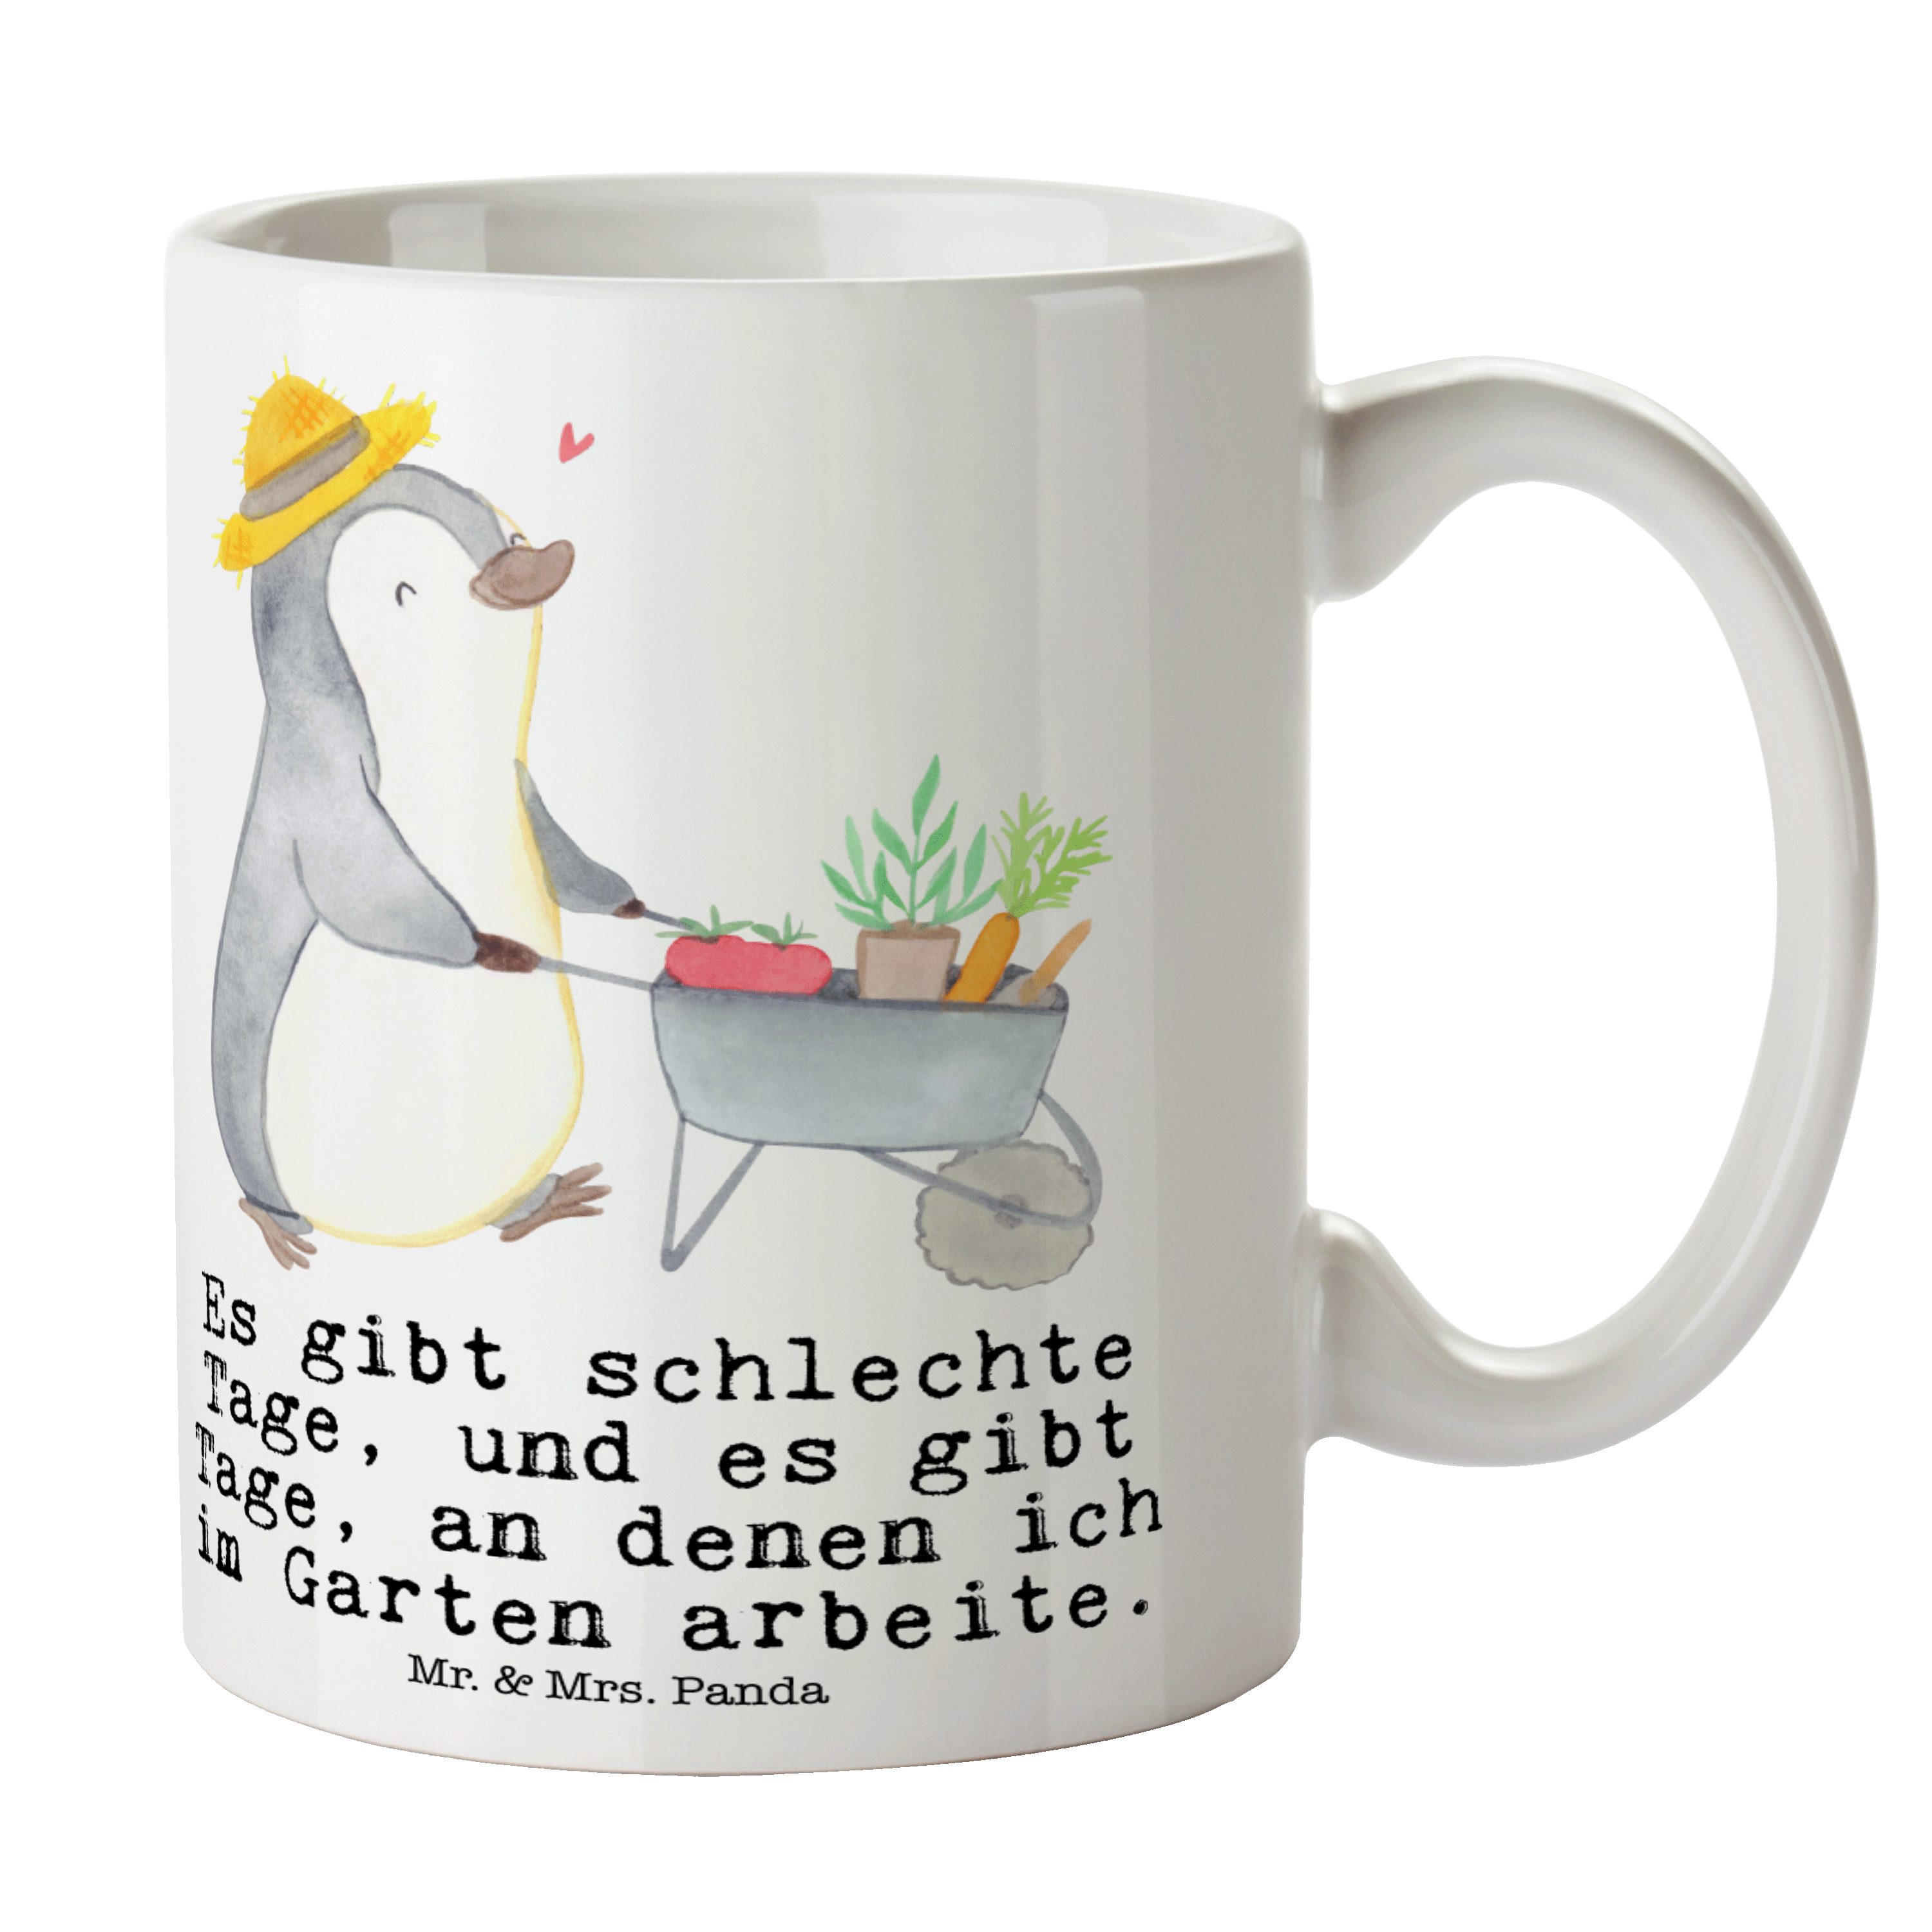 Mr. & Mrs. Panda Tasse Tage Auszeichnung, Pinguin Geschenk, - Keramik Dankeschön, Gartenarbeit - Weiß